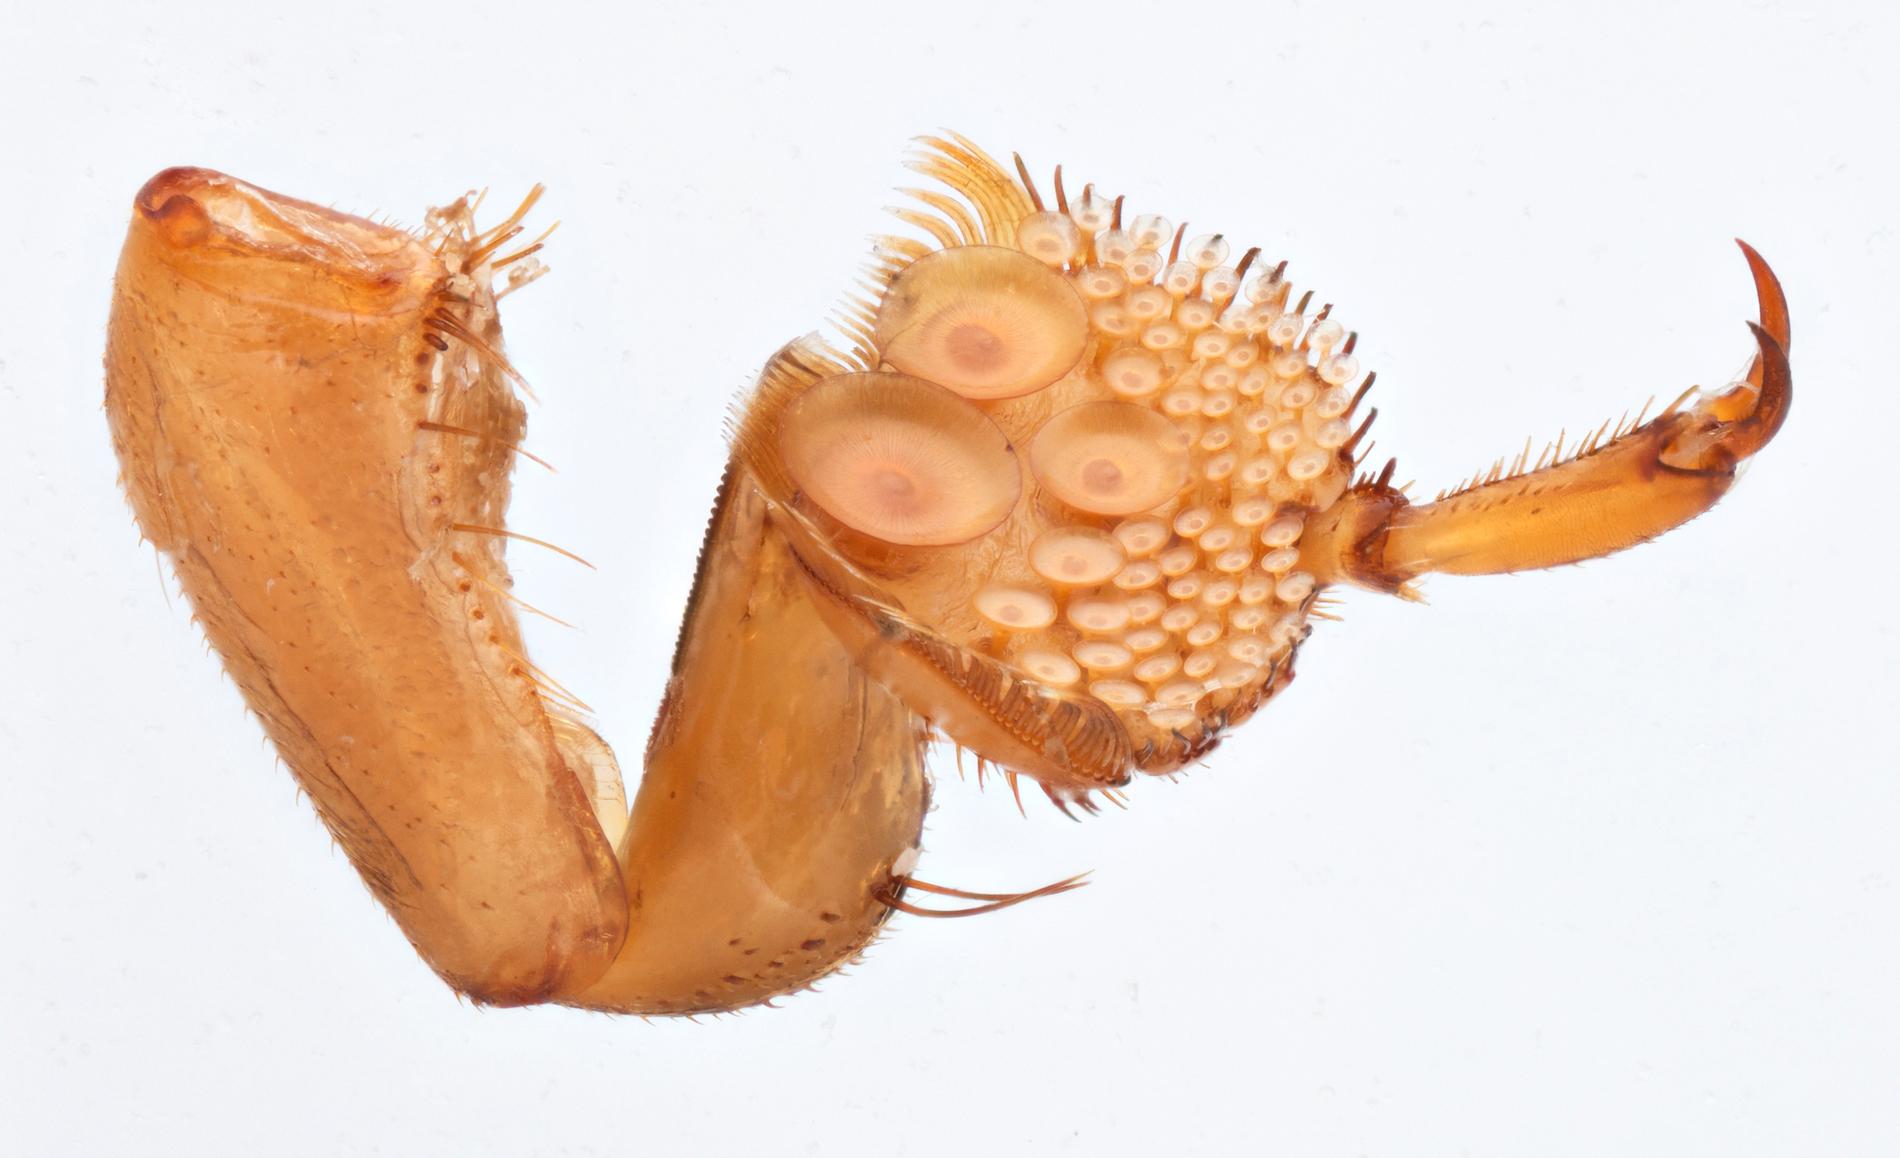 För att kunna hålla fast honan under parning har dykarskalbaggen utvecklat sugkoppar på benen. Vissa honors motdrag har blivit en skrovlig rygg, varpå hannen utvecklat olika typer av sugkoppar. Vissa för en slät, andra för en skrovlig rygg.